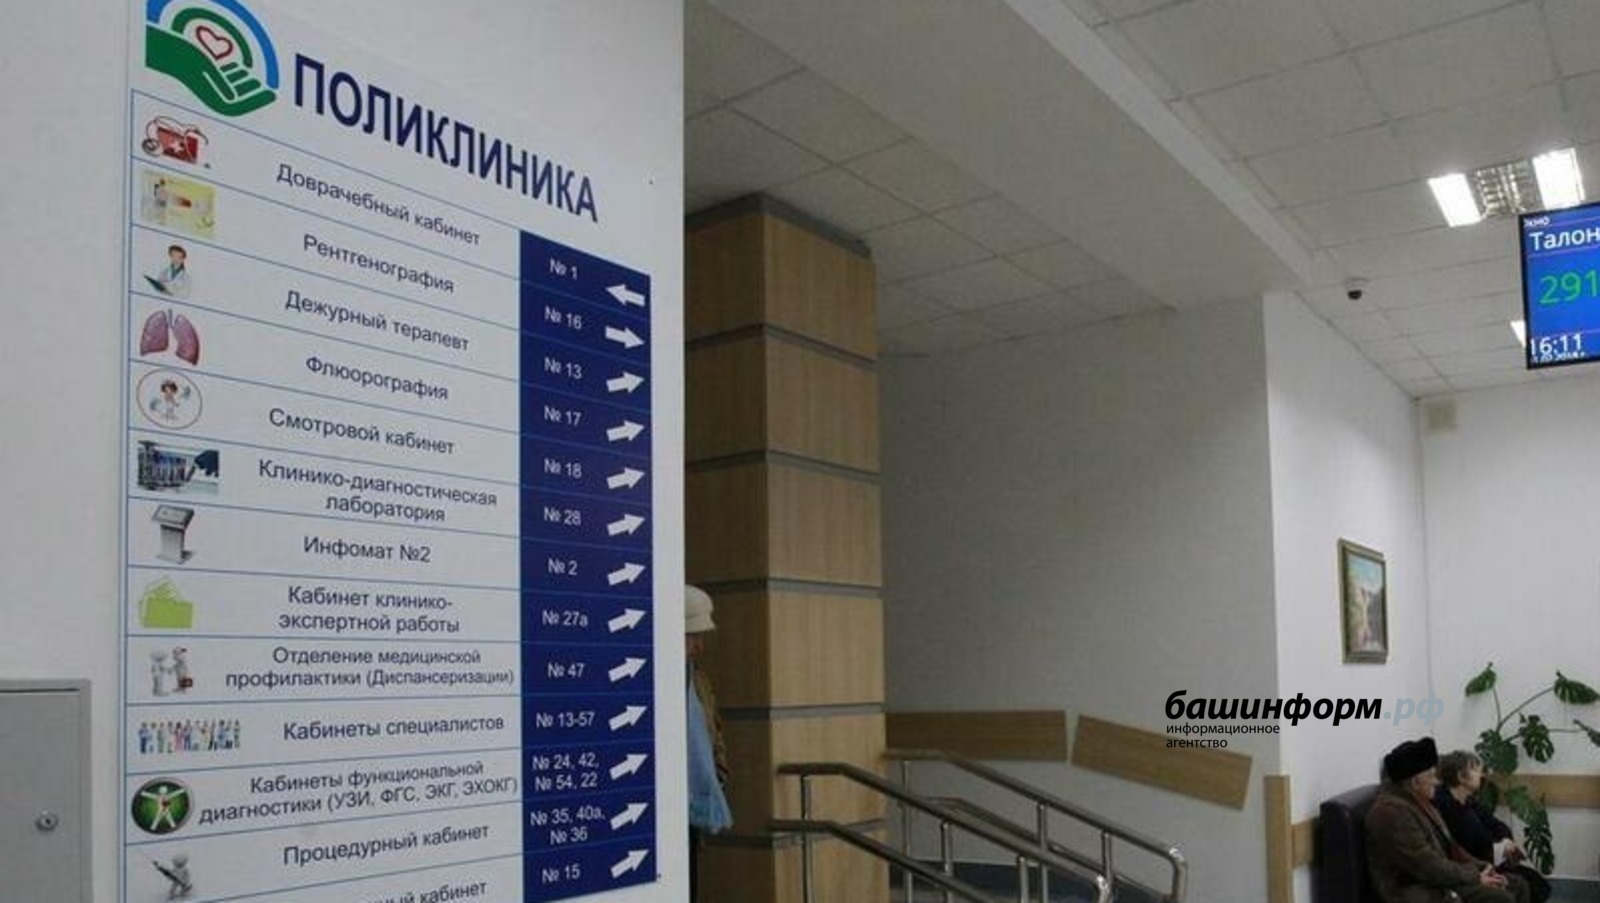 В связи с ростом уровня заболеваемости ОРВИ и гриппом минздрав Башкирии принял решение с 7 декабря увеличить время работы поликлиник